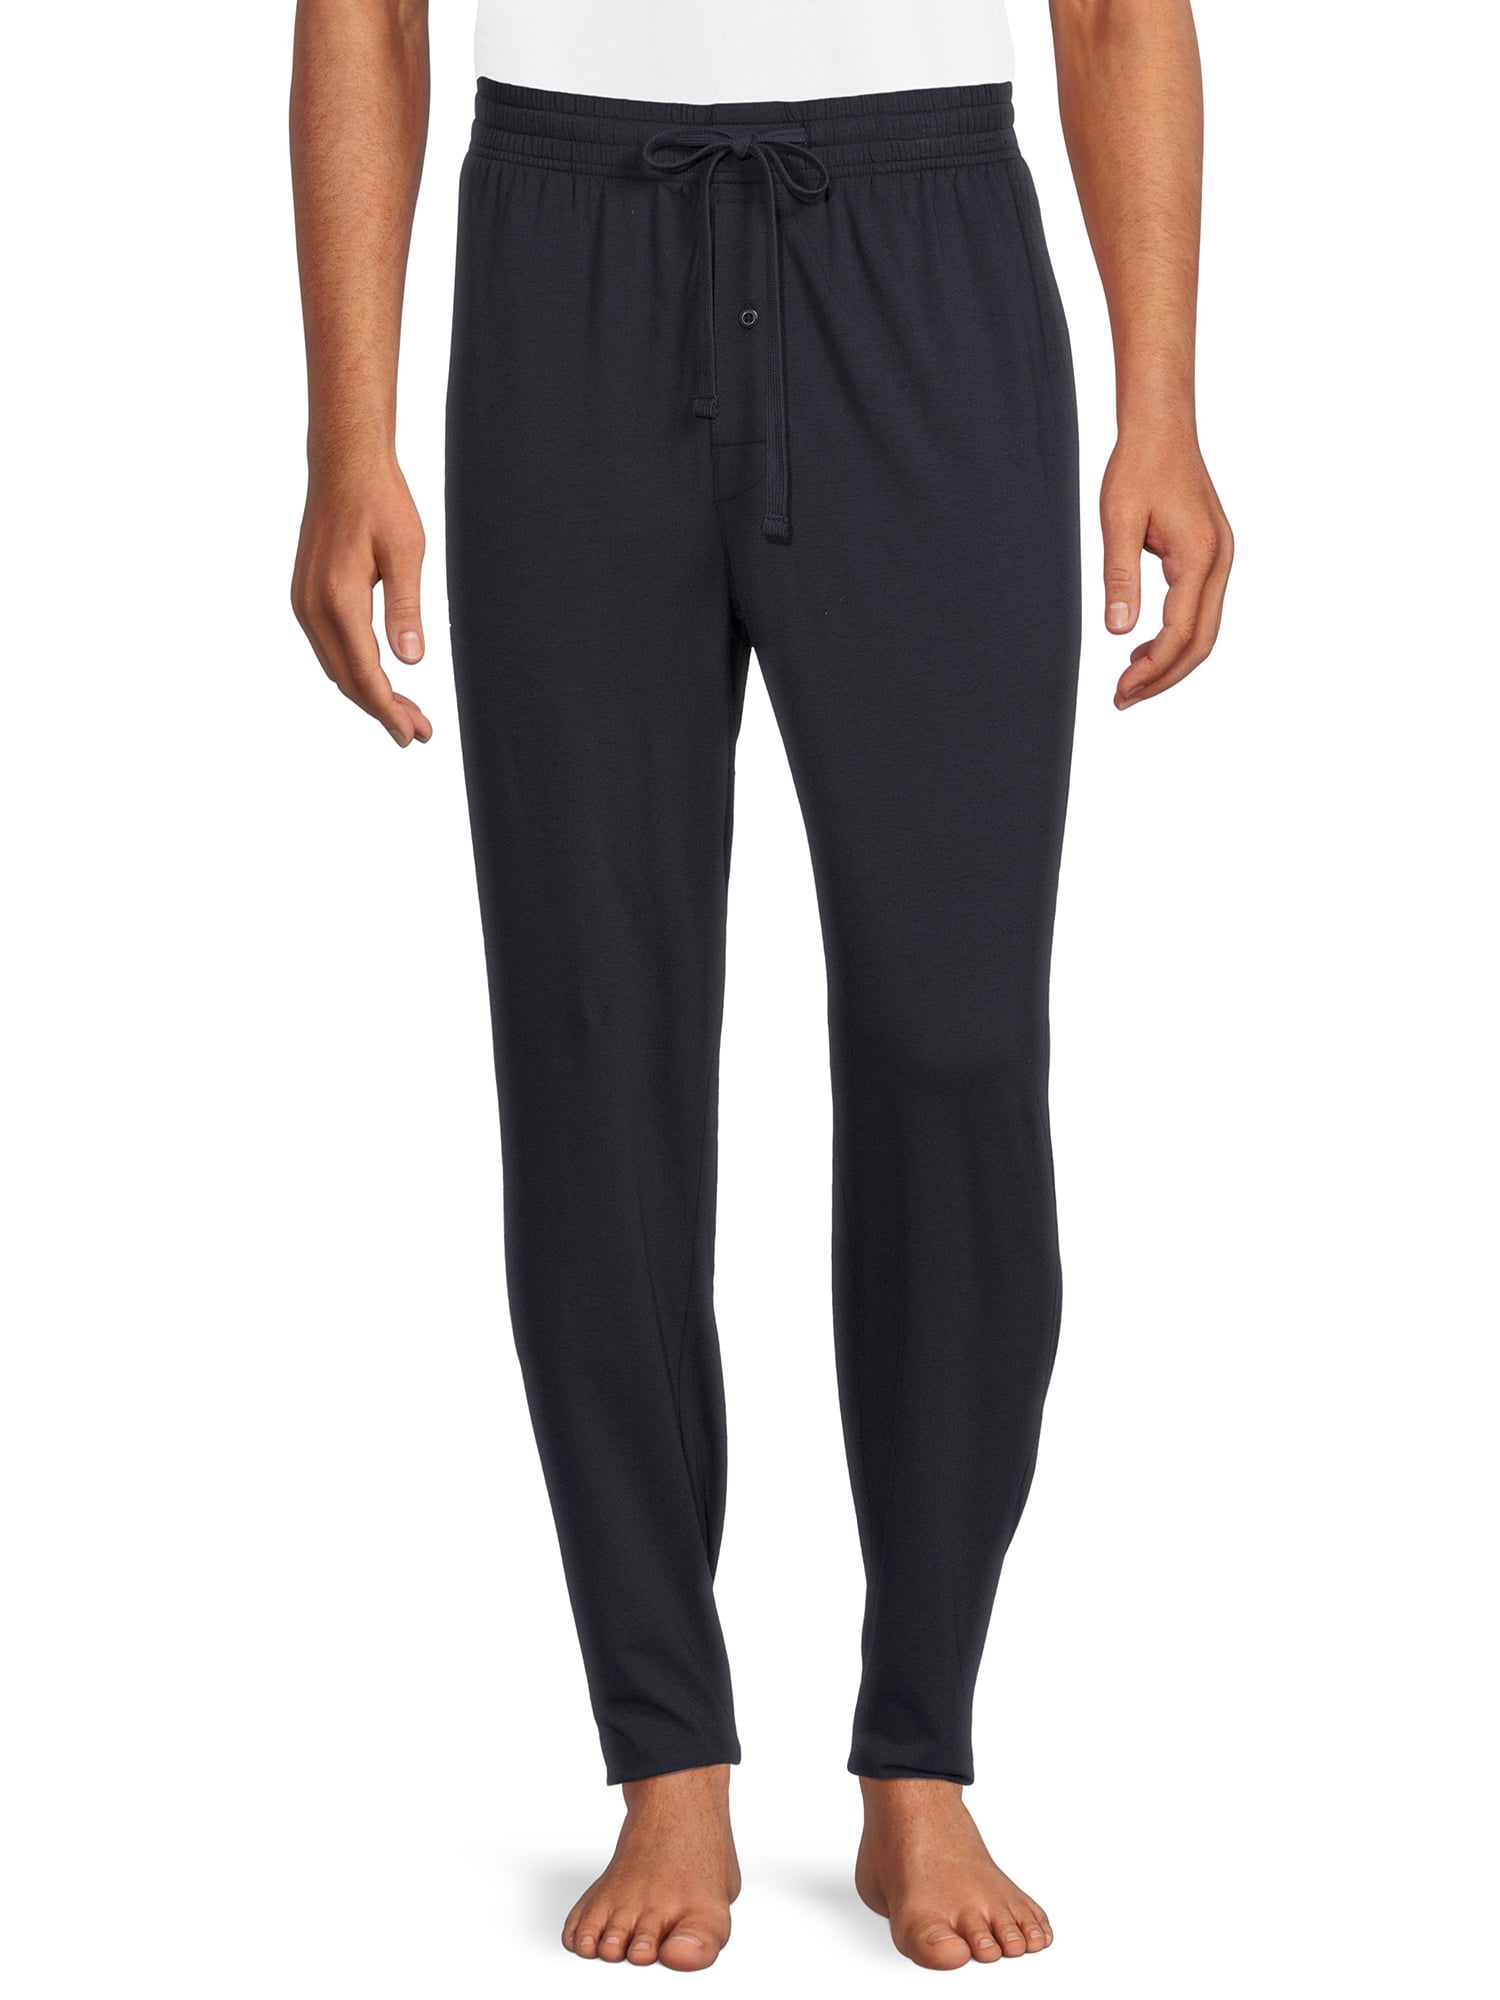 Hanes Men's Modal Sleep Pants - Walmart.com